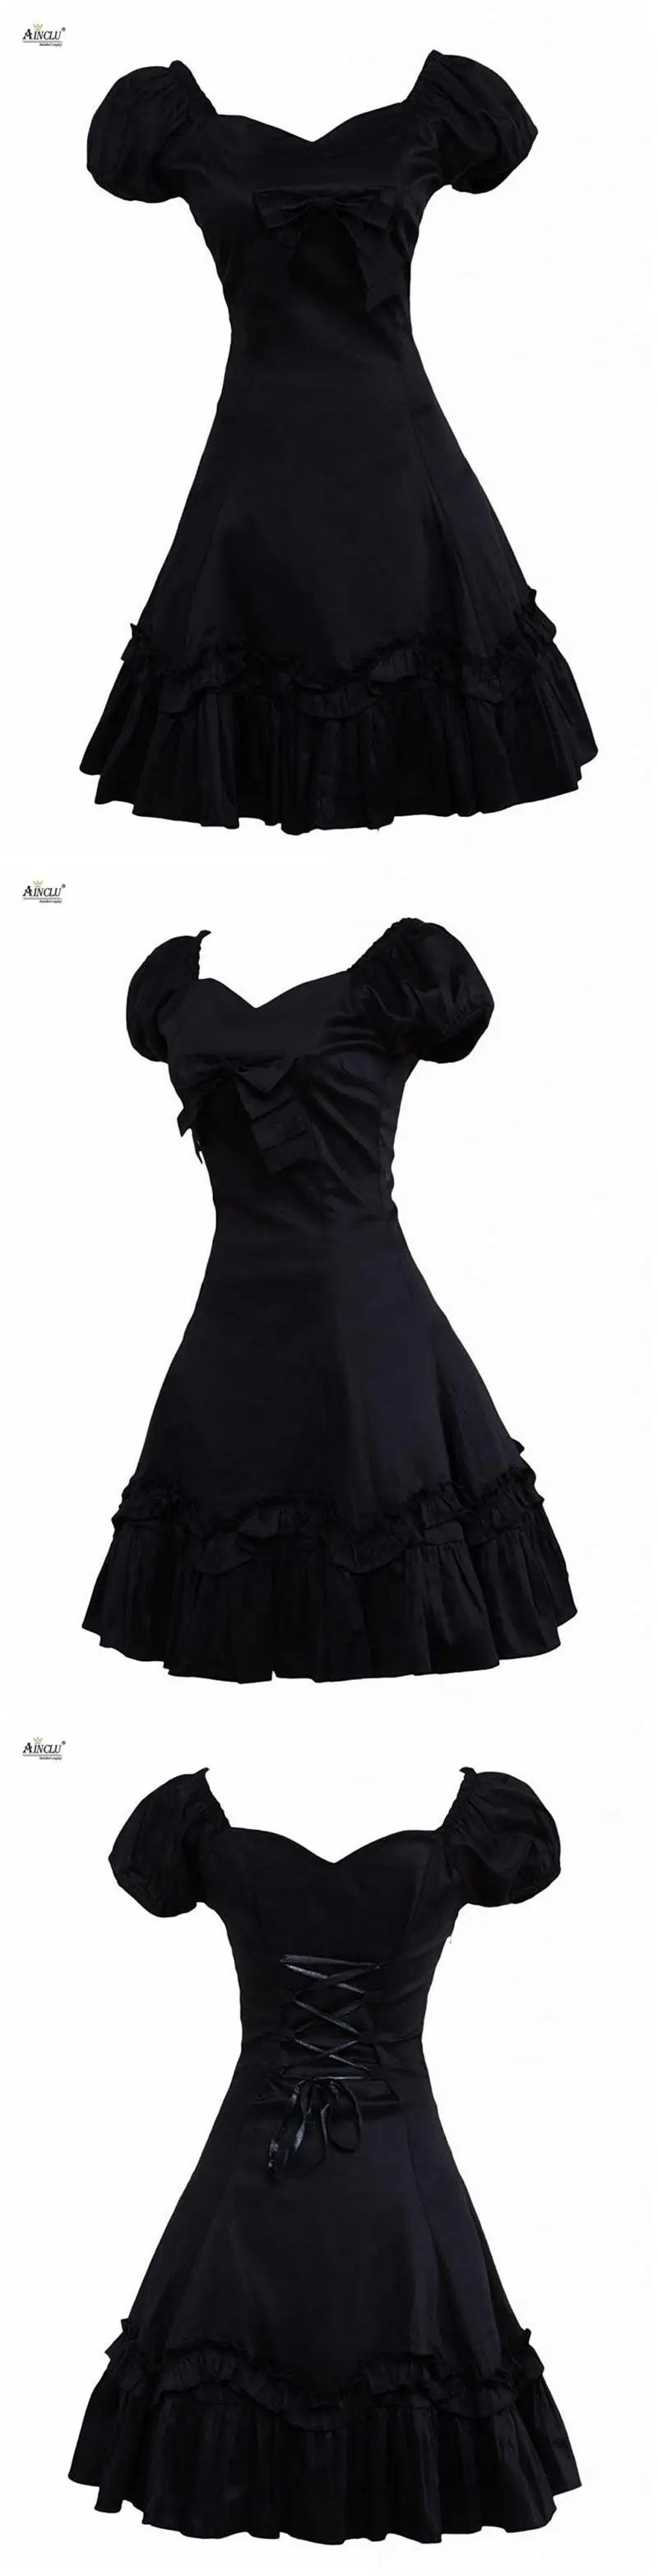 Платье Лолиты, женское черное пышное платье с короткими рукавами и бантом, хлопковые вечерние платья для косплея, классическое сексуальное платье лолиты, готическое платье с эластичной талией